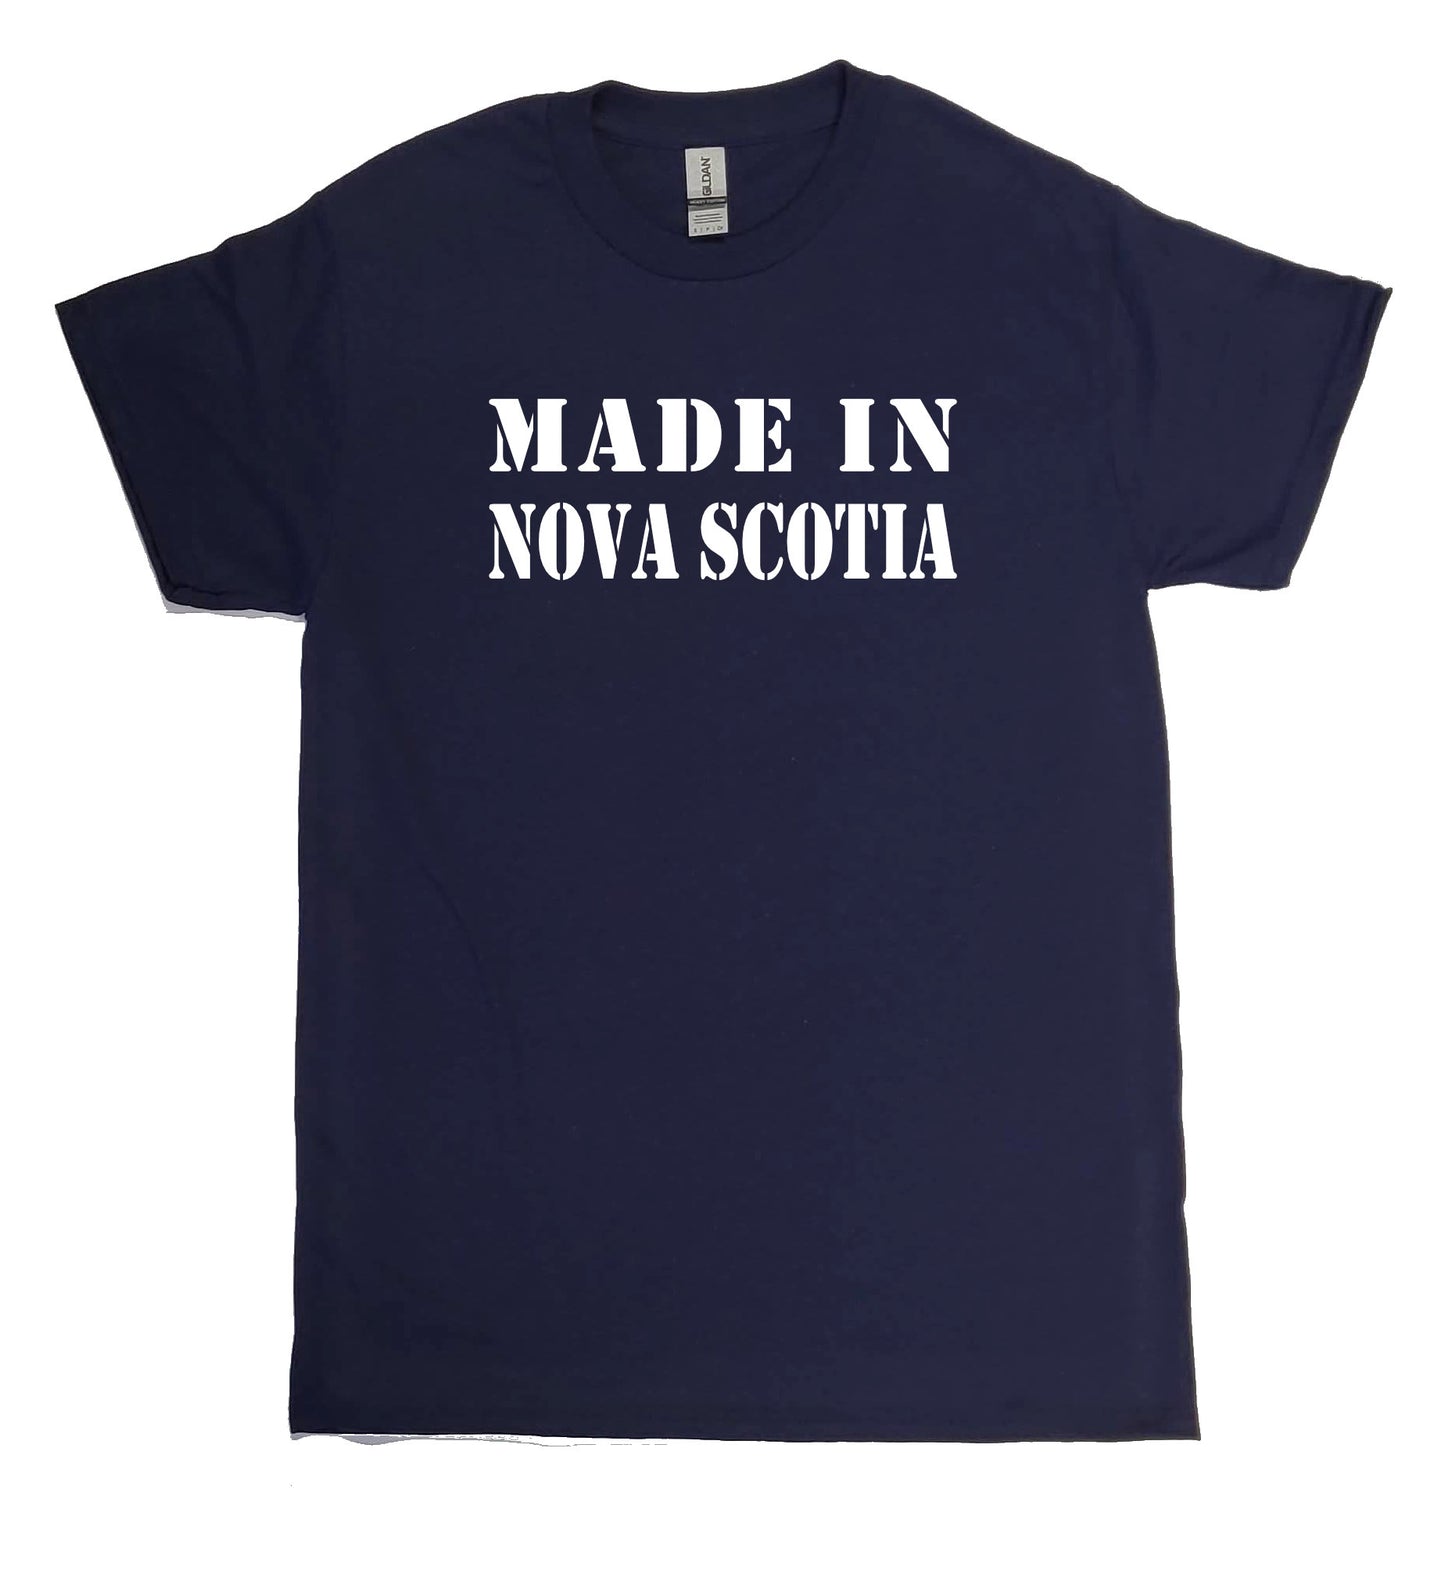 Made in Nova Scotia Tee